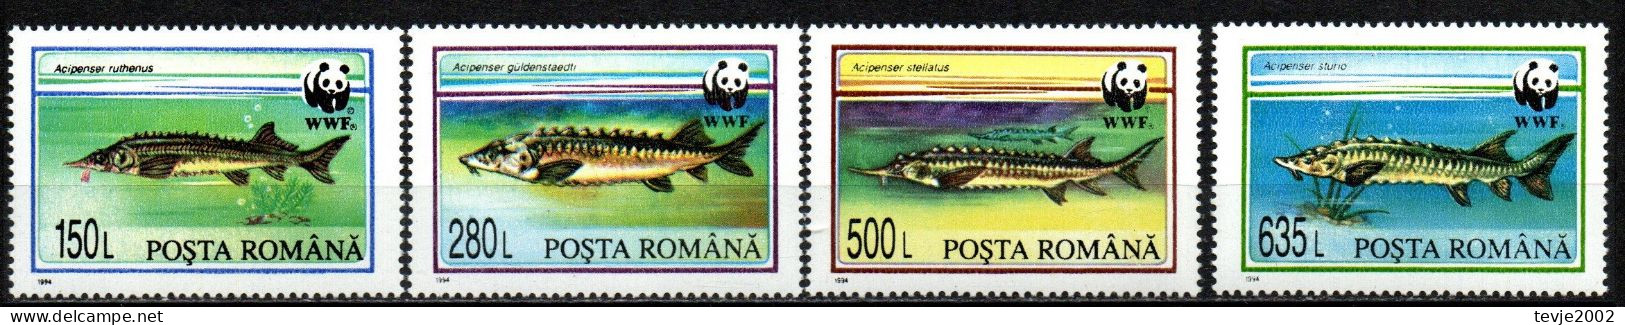 Rumänien 1994 - Mi.Nr. 5034 - 5037 - Postfrisch MNH - Tiere Animals Fische Fishes WWF - Fische